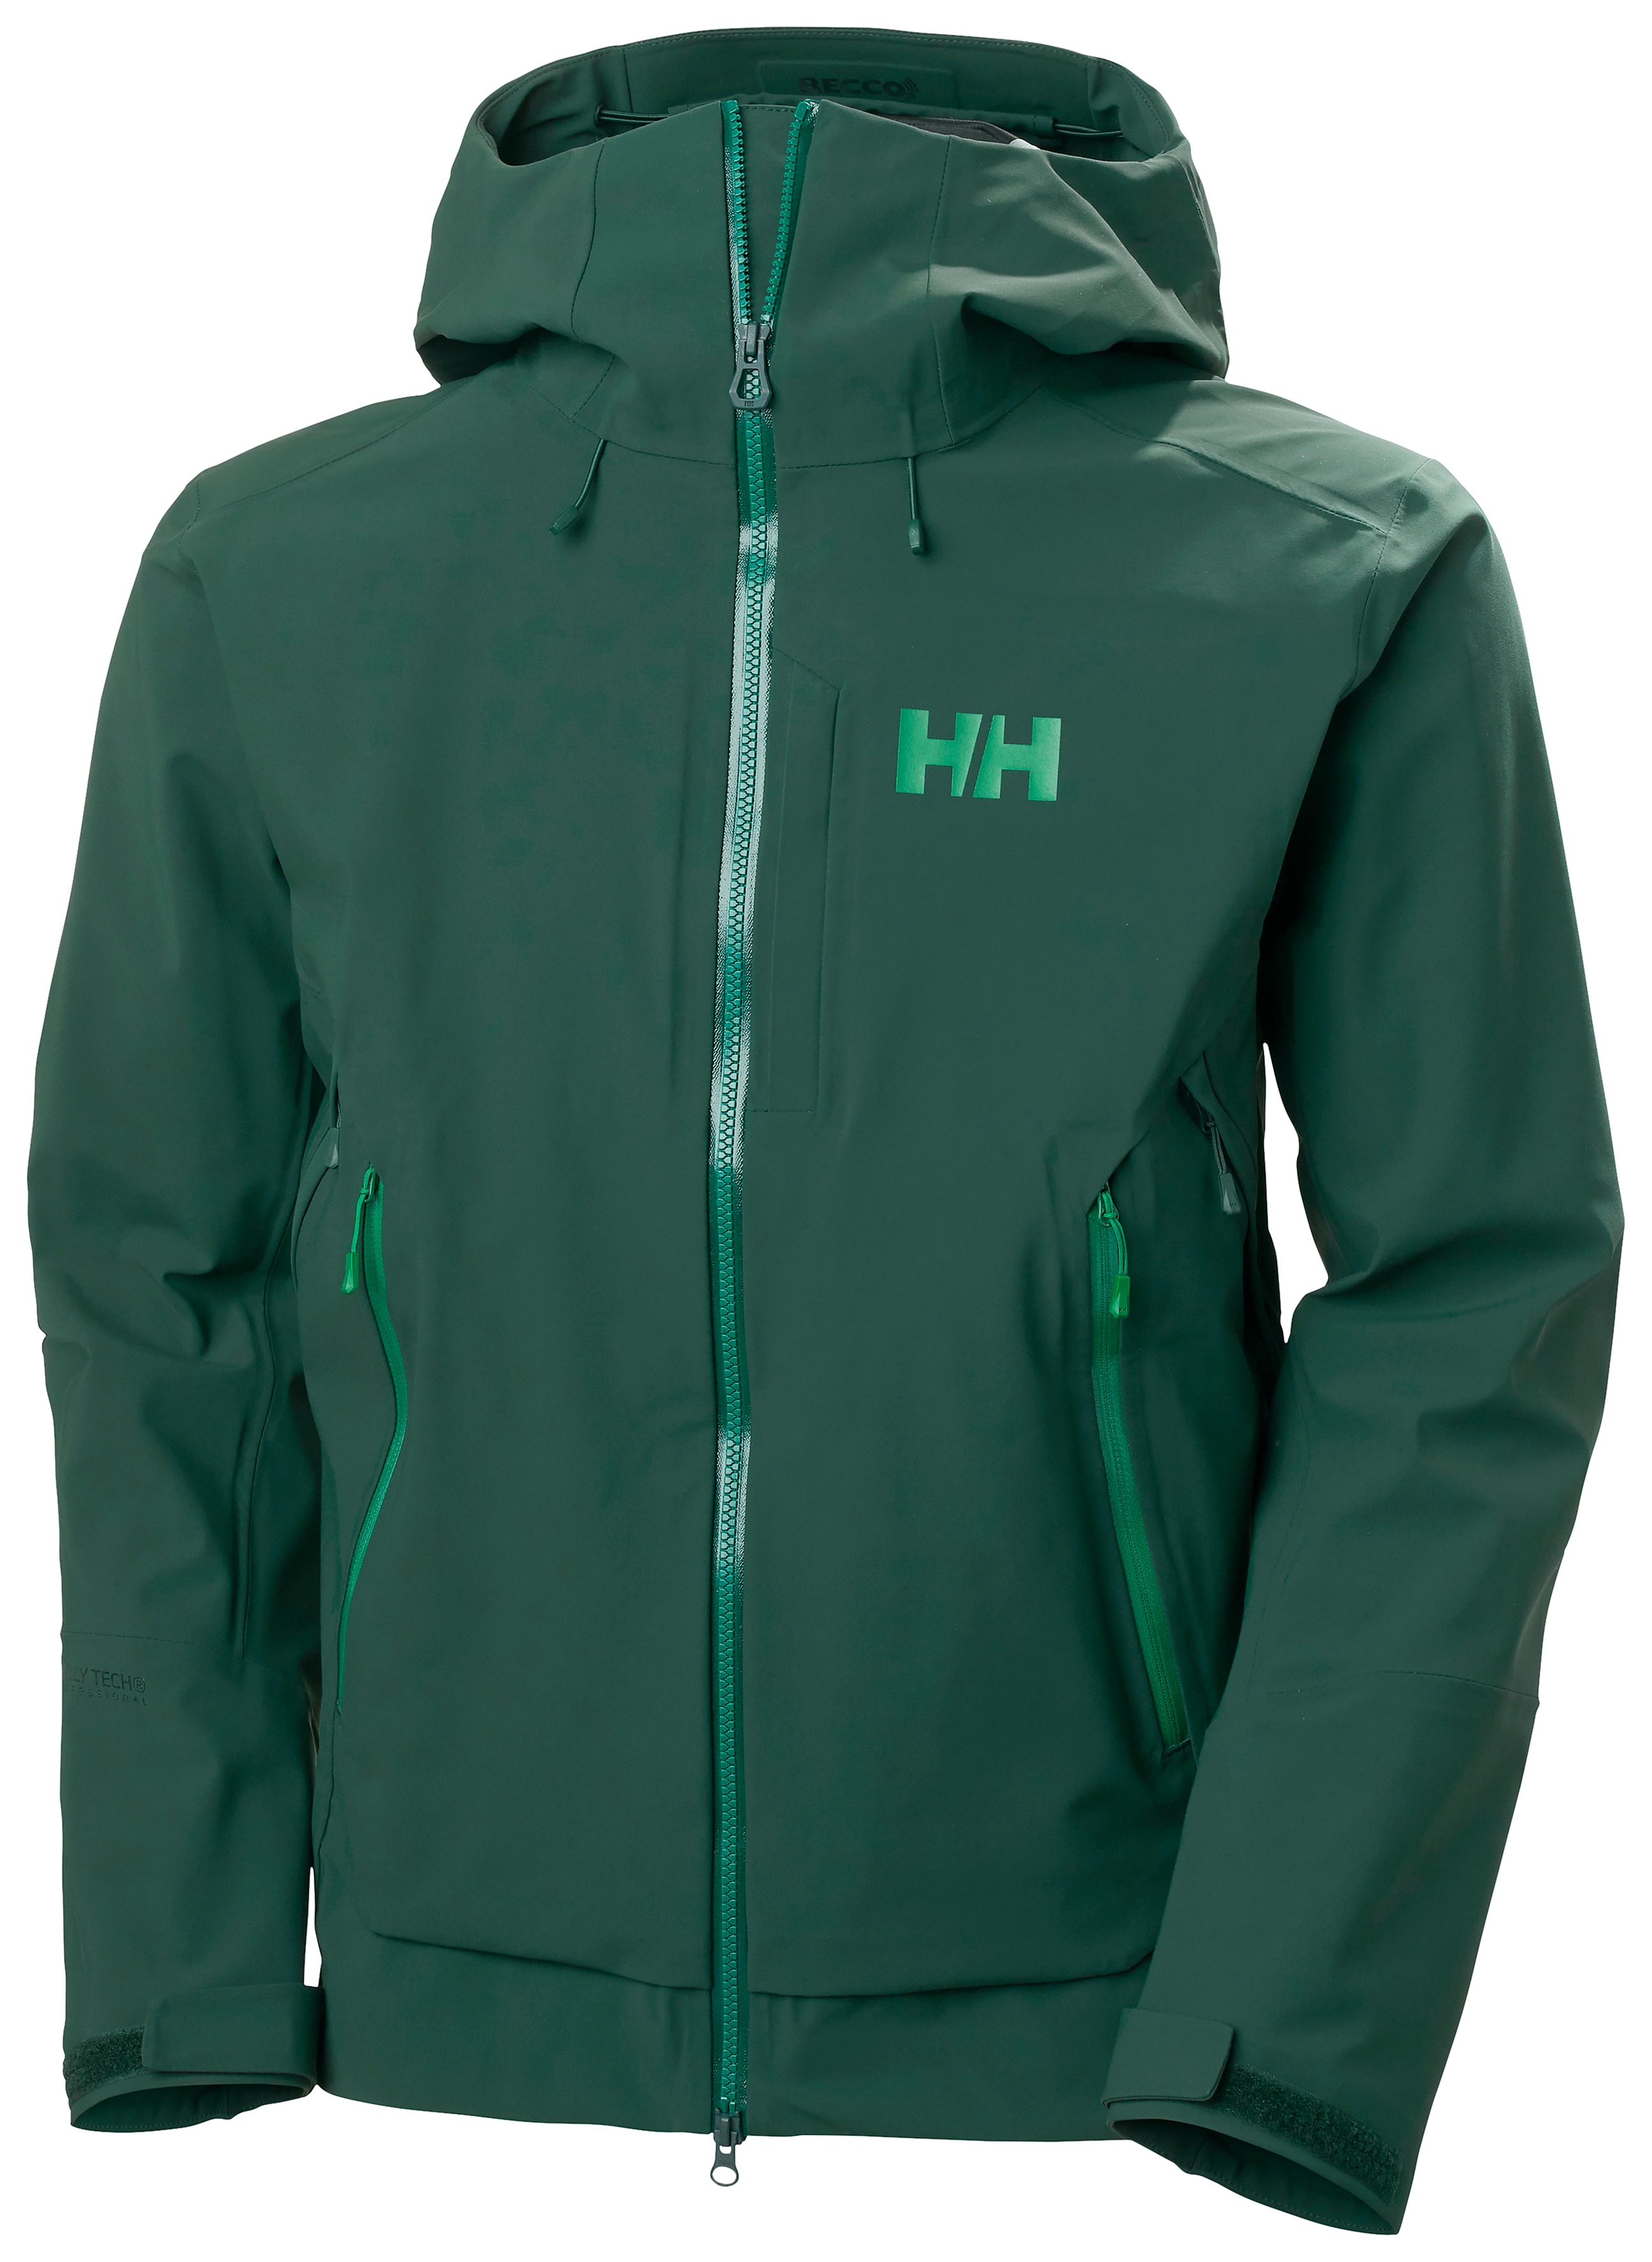 Helly Hansen Verglas BC Jacket